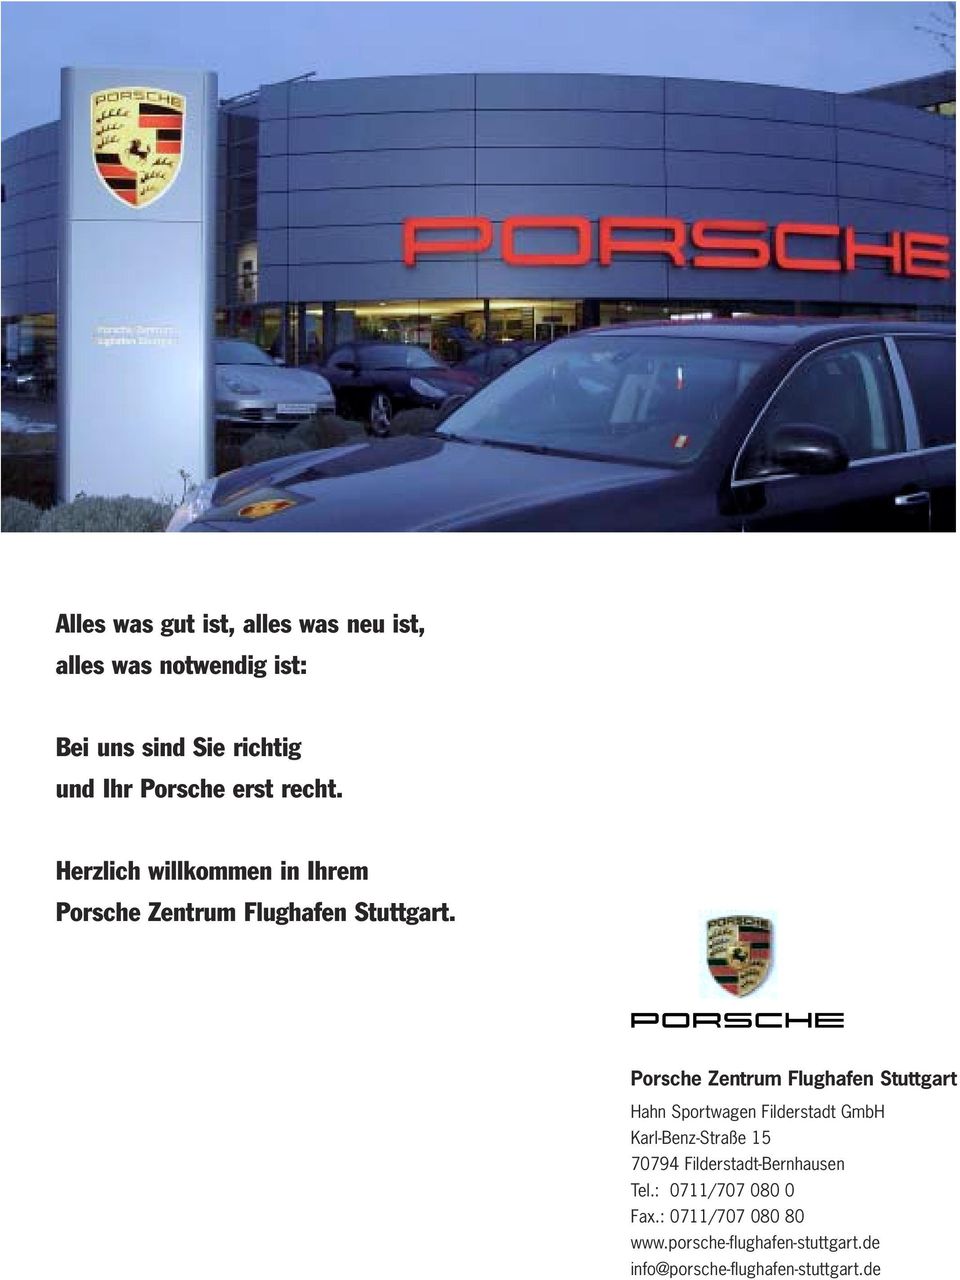 Porsche Zentrum Flughafen Stuttgart Hahn Sportwagen Filderstadt GmbH Karl-Benz-Straße 15 70794